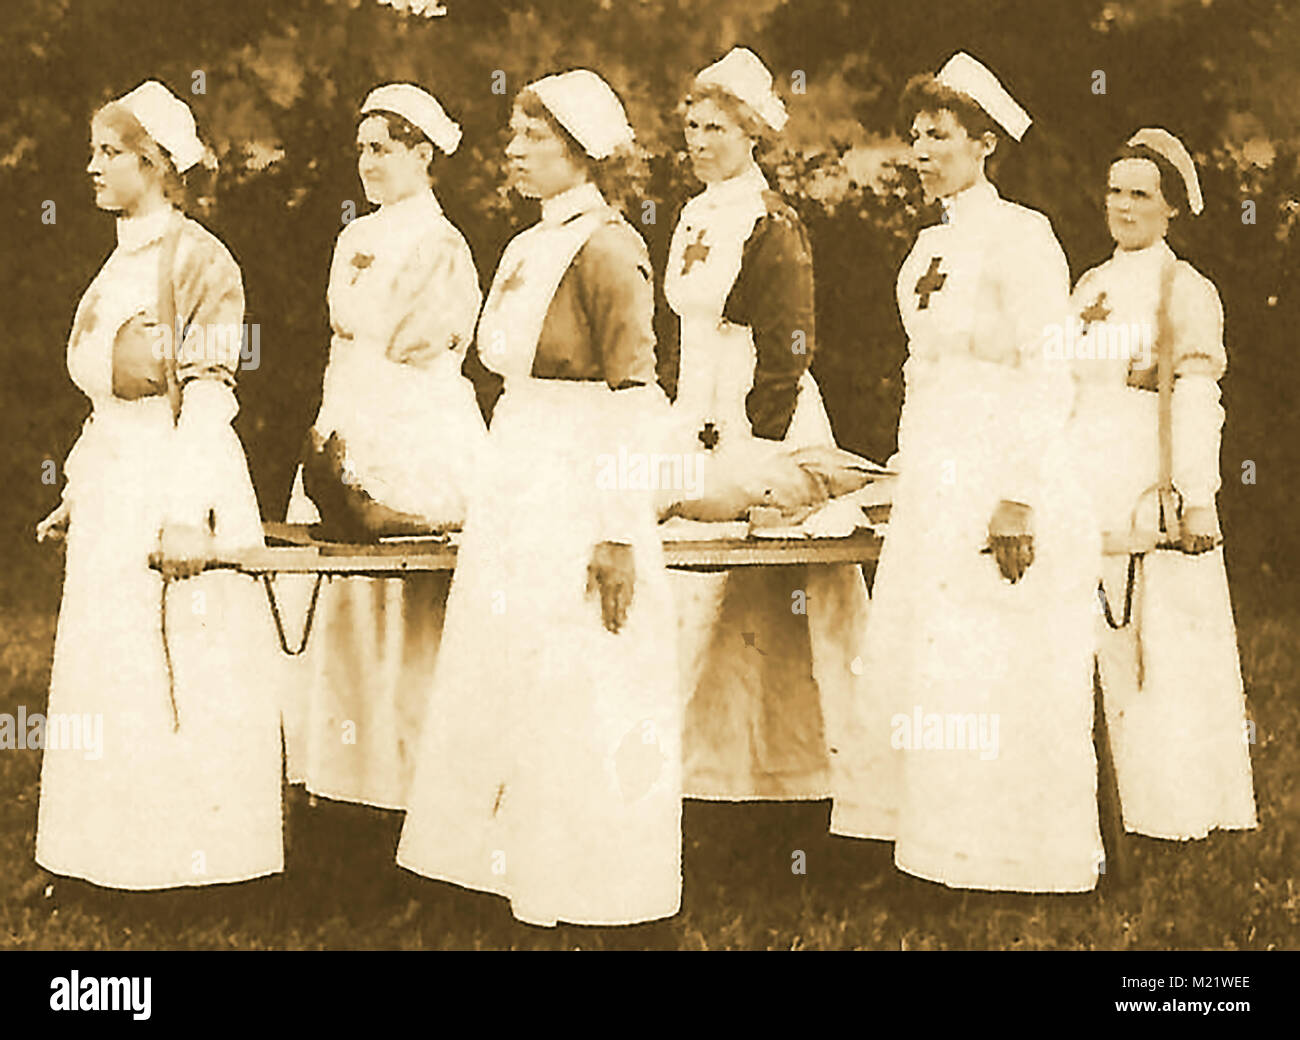 Première Guerre mondiale (1914-1918) alias la Grande Guerre ou Première Guerre mondiale - Guerre de tranchées - Nursess agissant en tant que brancardiers Banque D'Images